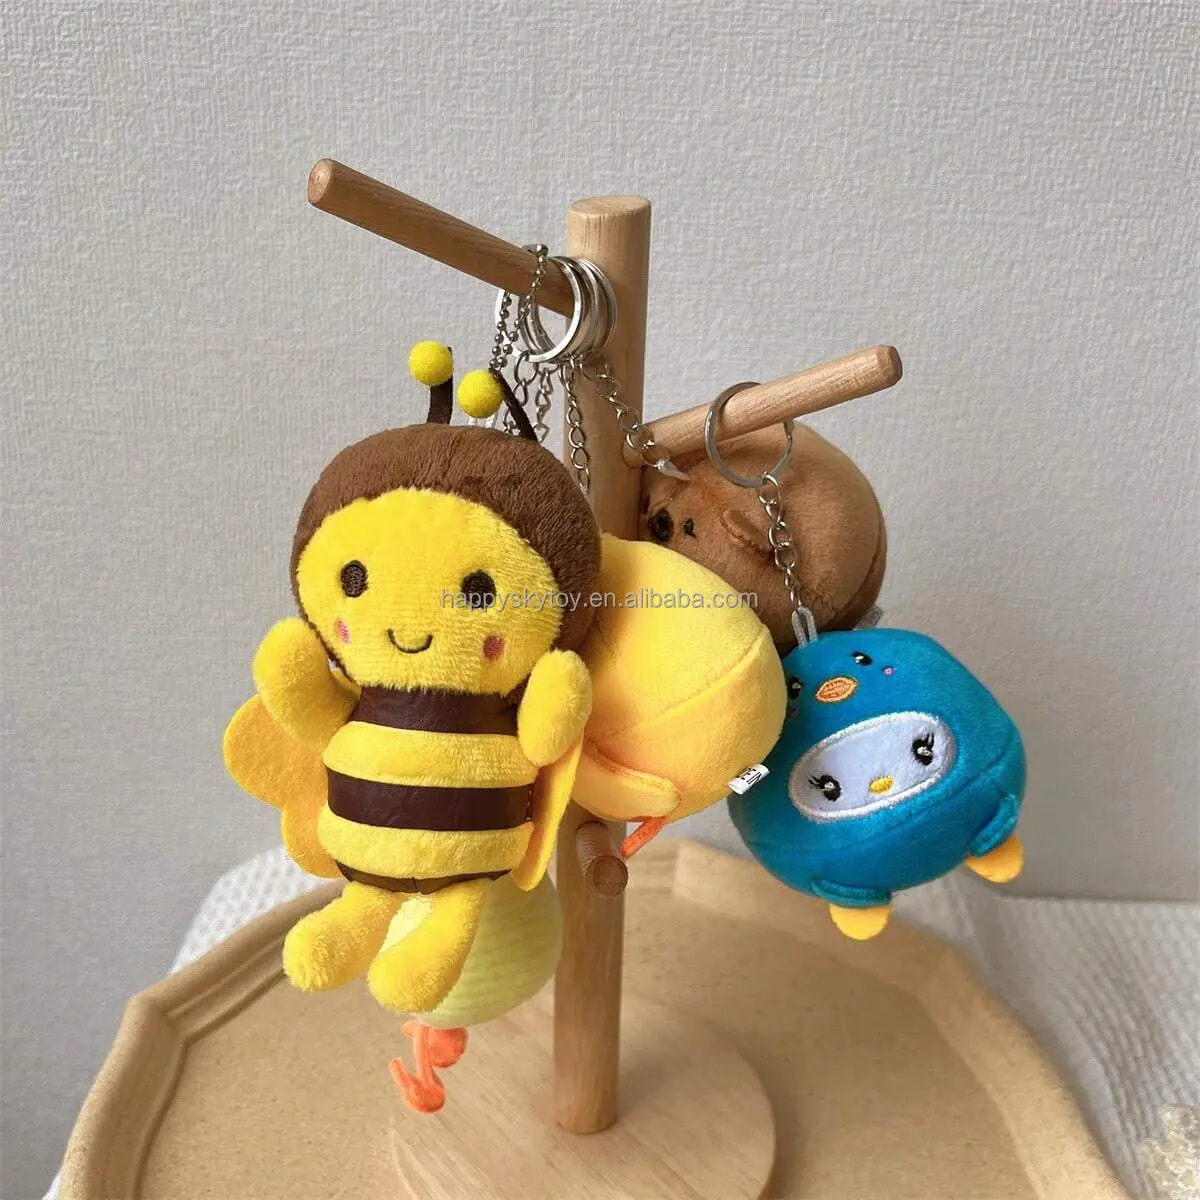 カワイイビーぬいぐるみキーホルダーおもちゃぬいぐるみ動物ミツバチかわいいミニ人形柔らかい装飾蜂ぬいぐるみキーホルダー